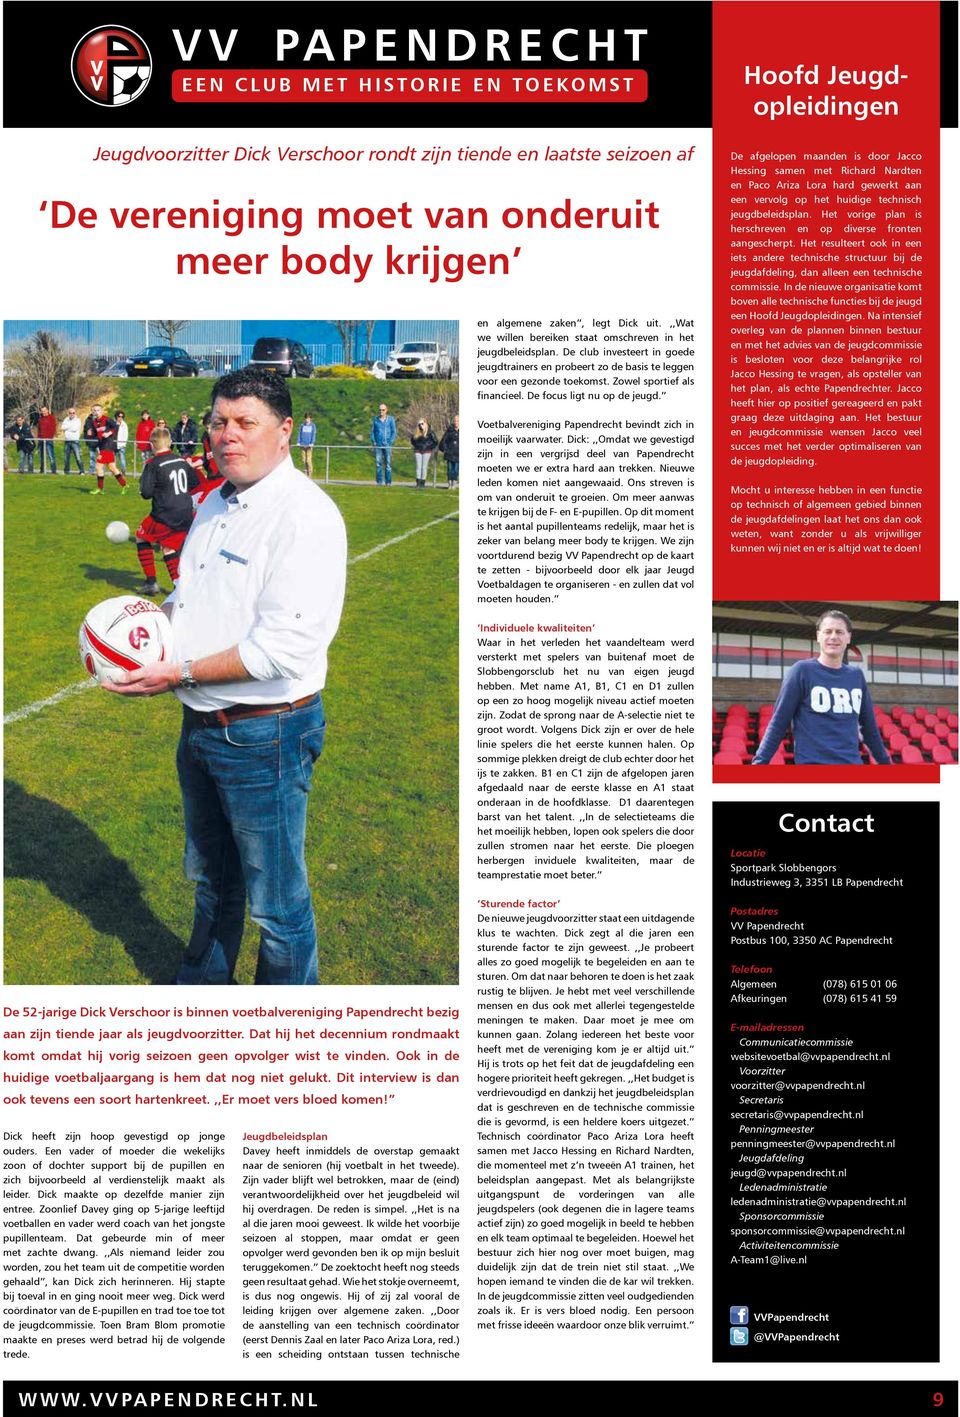 Zowel sportief als financieel. De focus ligt nu op de jeugd. Voetbalvereniging Papendrecht bevindt zich in moeilijk vaarwater.